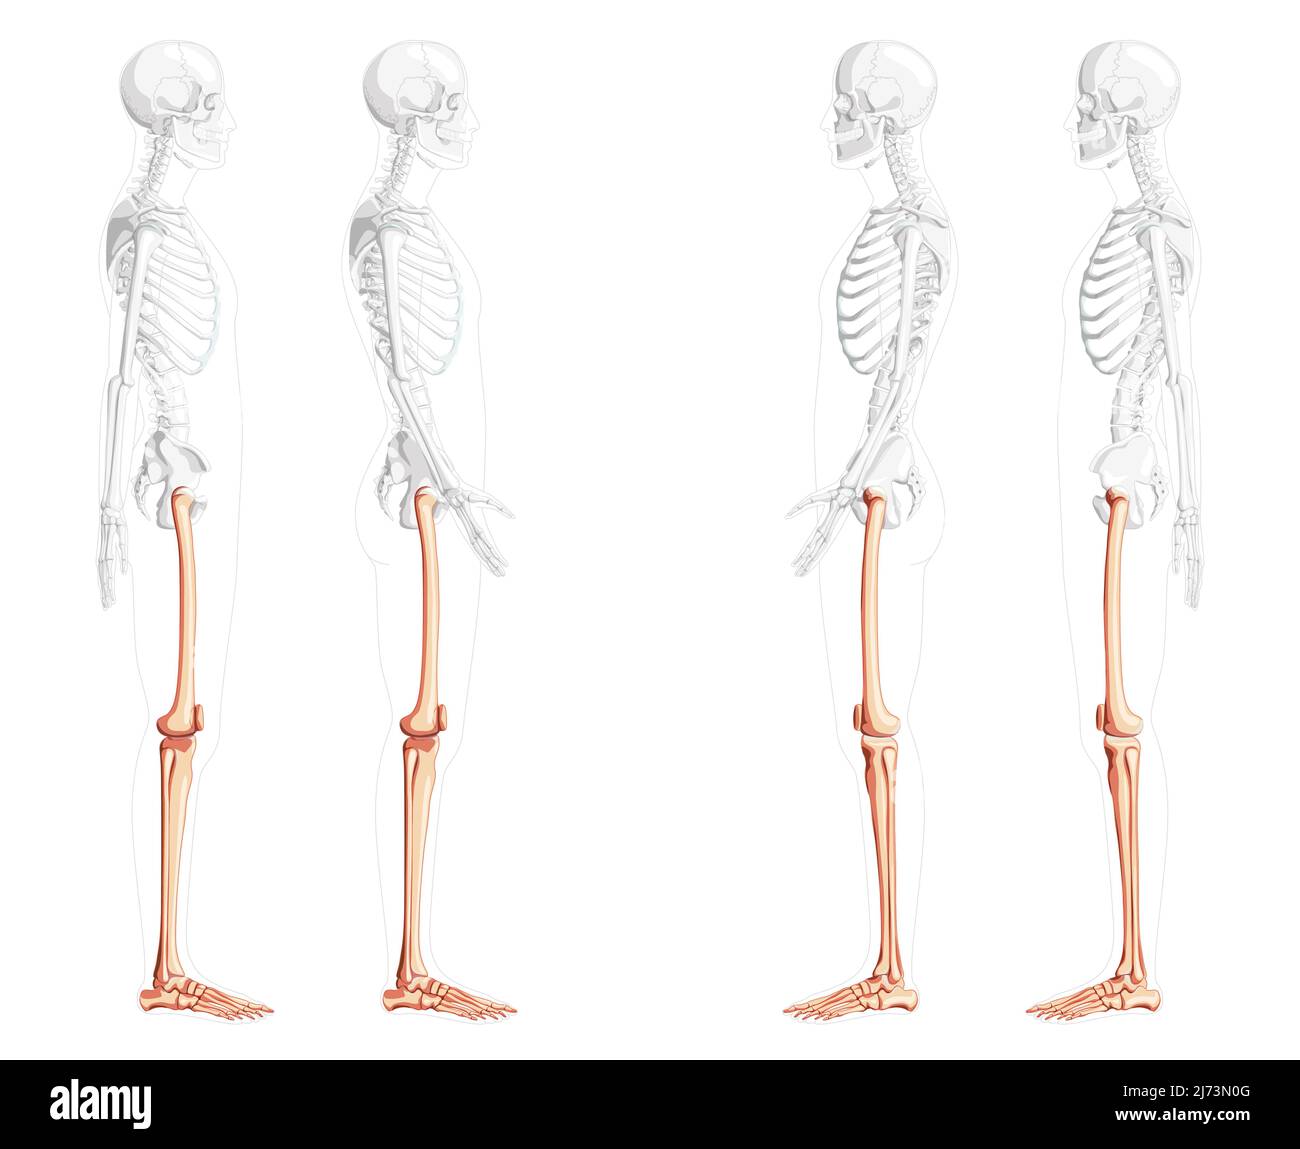 Squelette cuisses et jambes membre inférieur vue latérale humaine avec position des os partiellement transparente. Ensemble de patella, péroné, tibia, pied réaliste plat couleur naturelle Illustration vectorielle de l'anatomie isolée Illustration de Vecteur